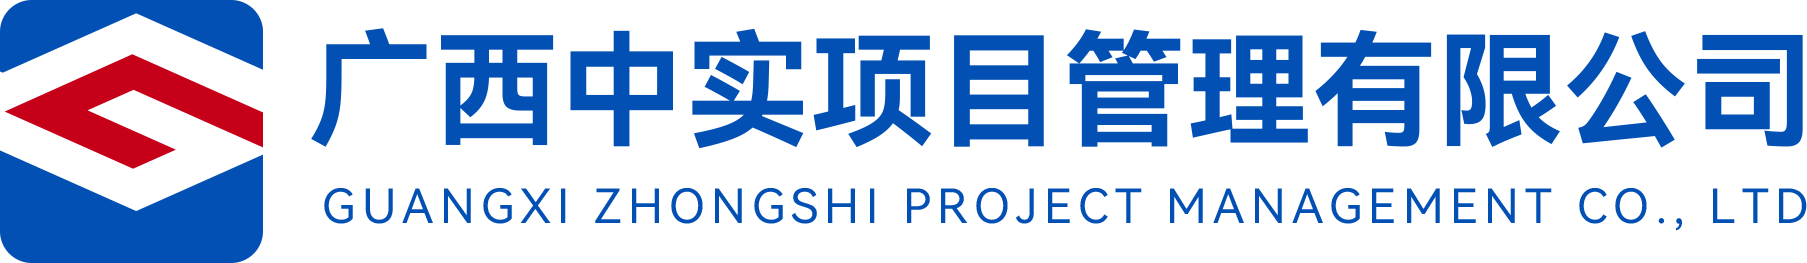 广西招标采购网-广西中实项目管理有限公司